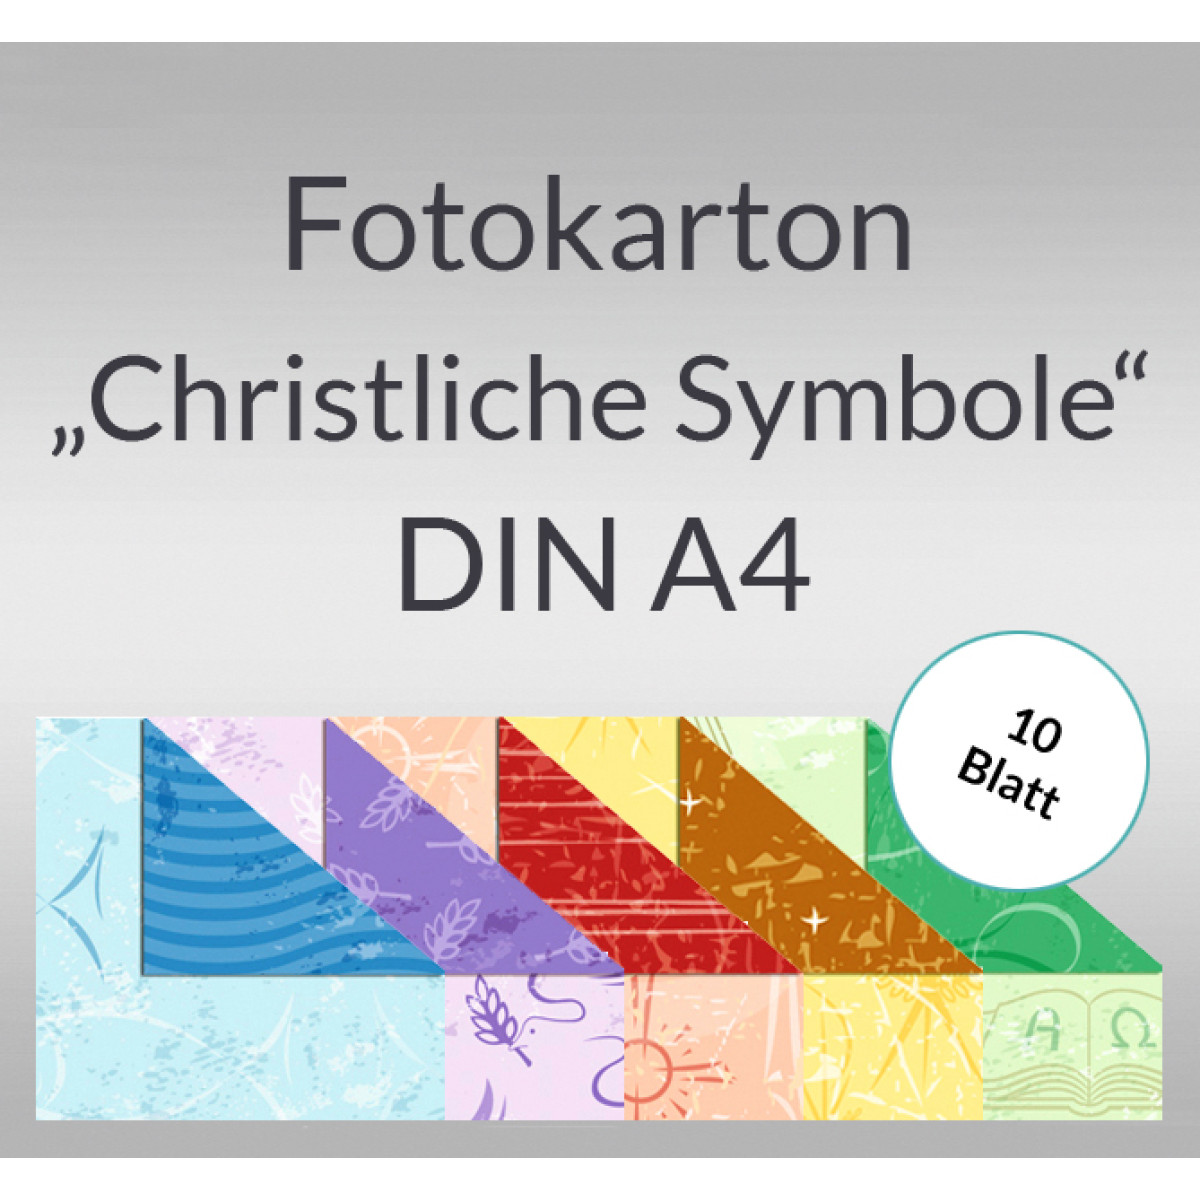 Fotokarton "Christliche Symbole" DIN A4 - 10 Blatt